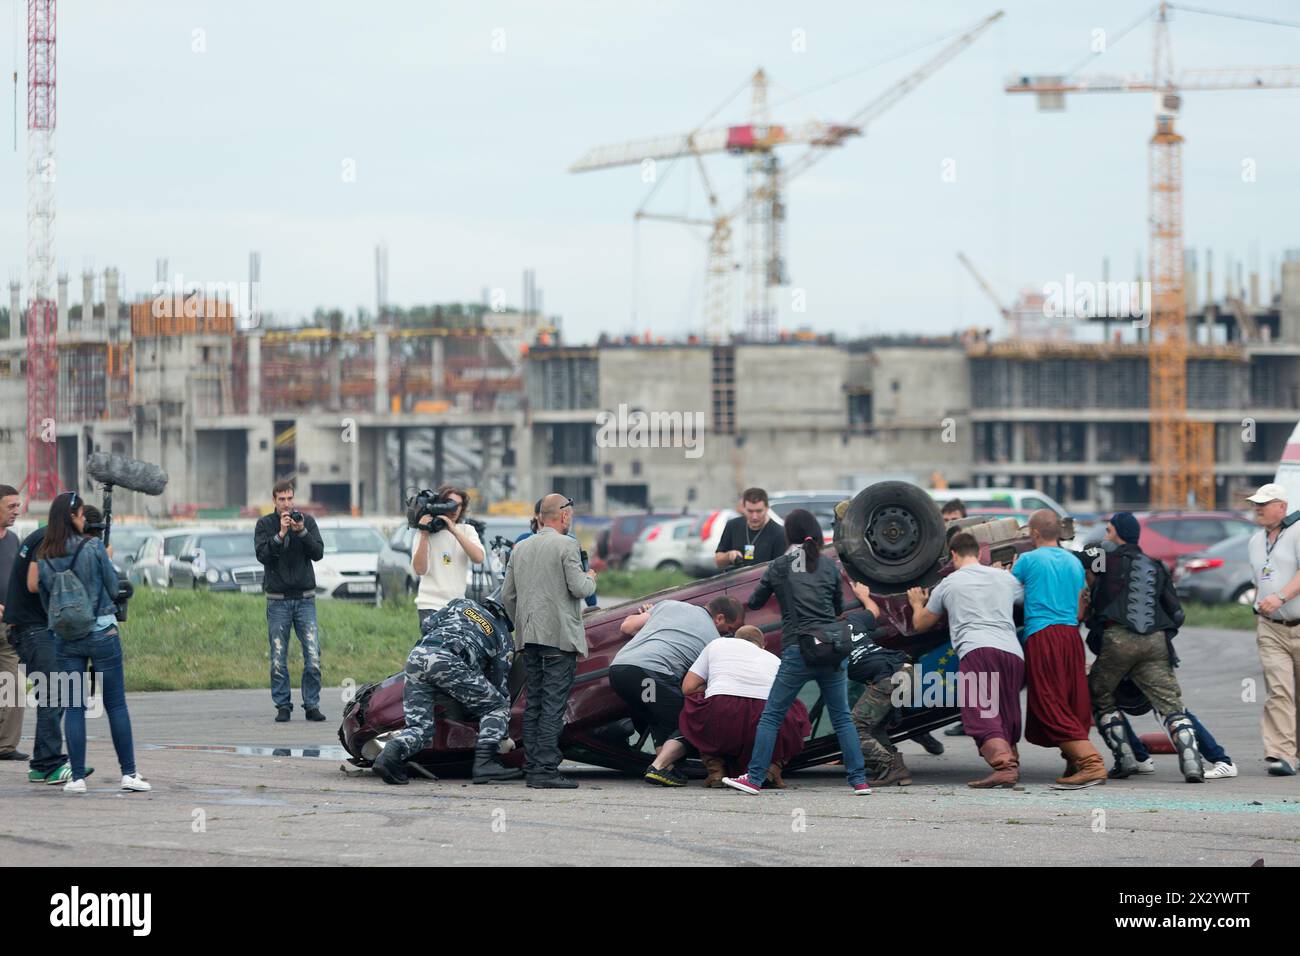 MOSKAU - 25. August: Retter stürzten am 25. August 2012 in Moskau auf das umgedrehte Auto auf dem Festival of Art und Filmstunt Prometheus in Tushino. T Stockfoto